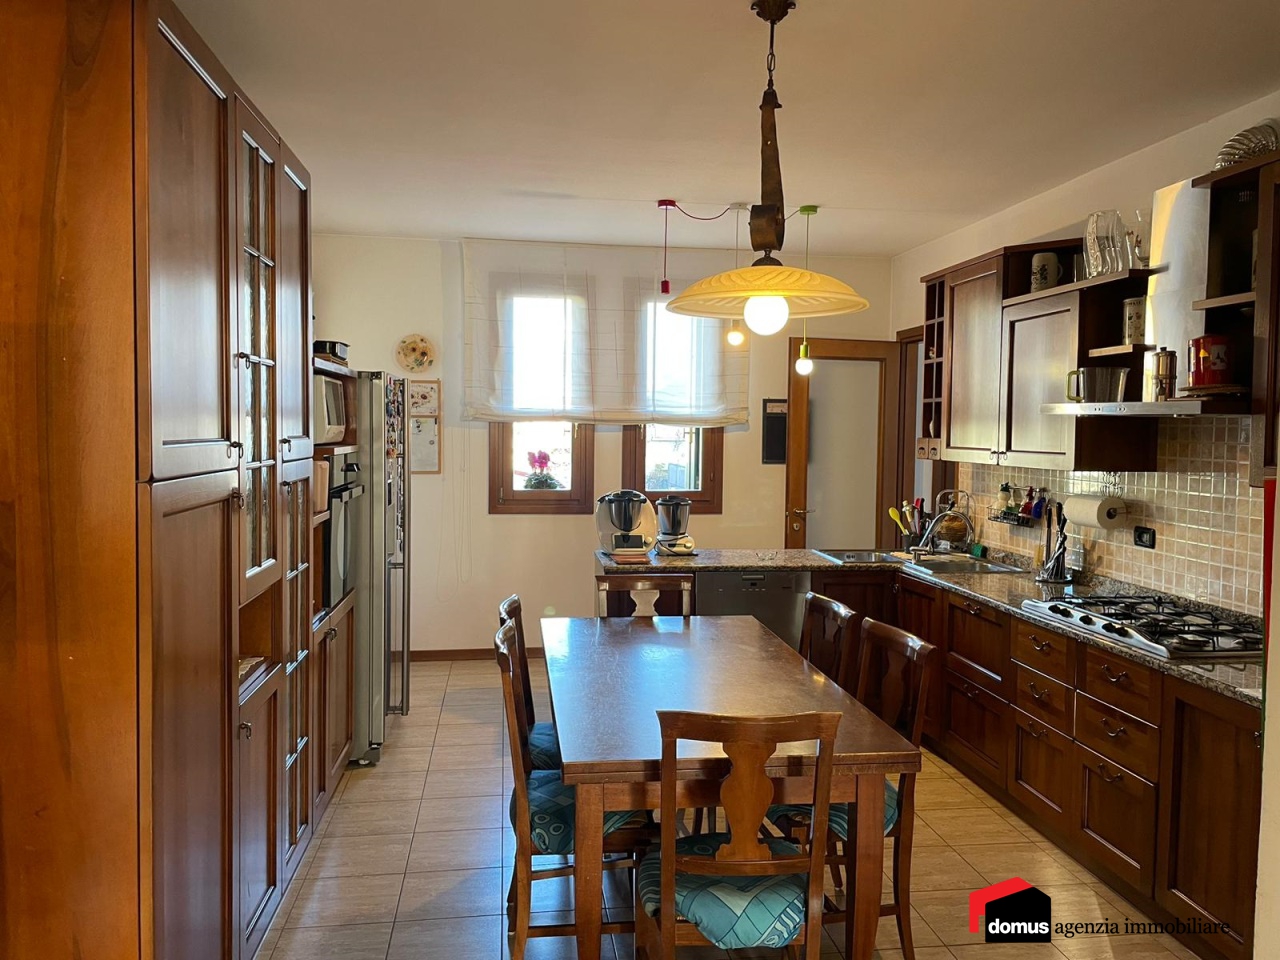 Appartamento in vendita a Zugliano, 2 locali, prezzo € 80.000 | PortaleAgenzieImmobiliari.it